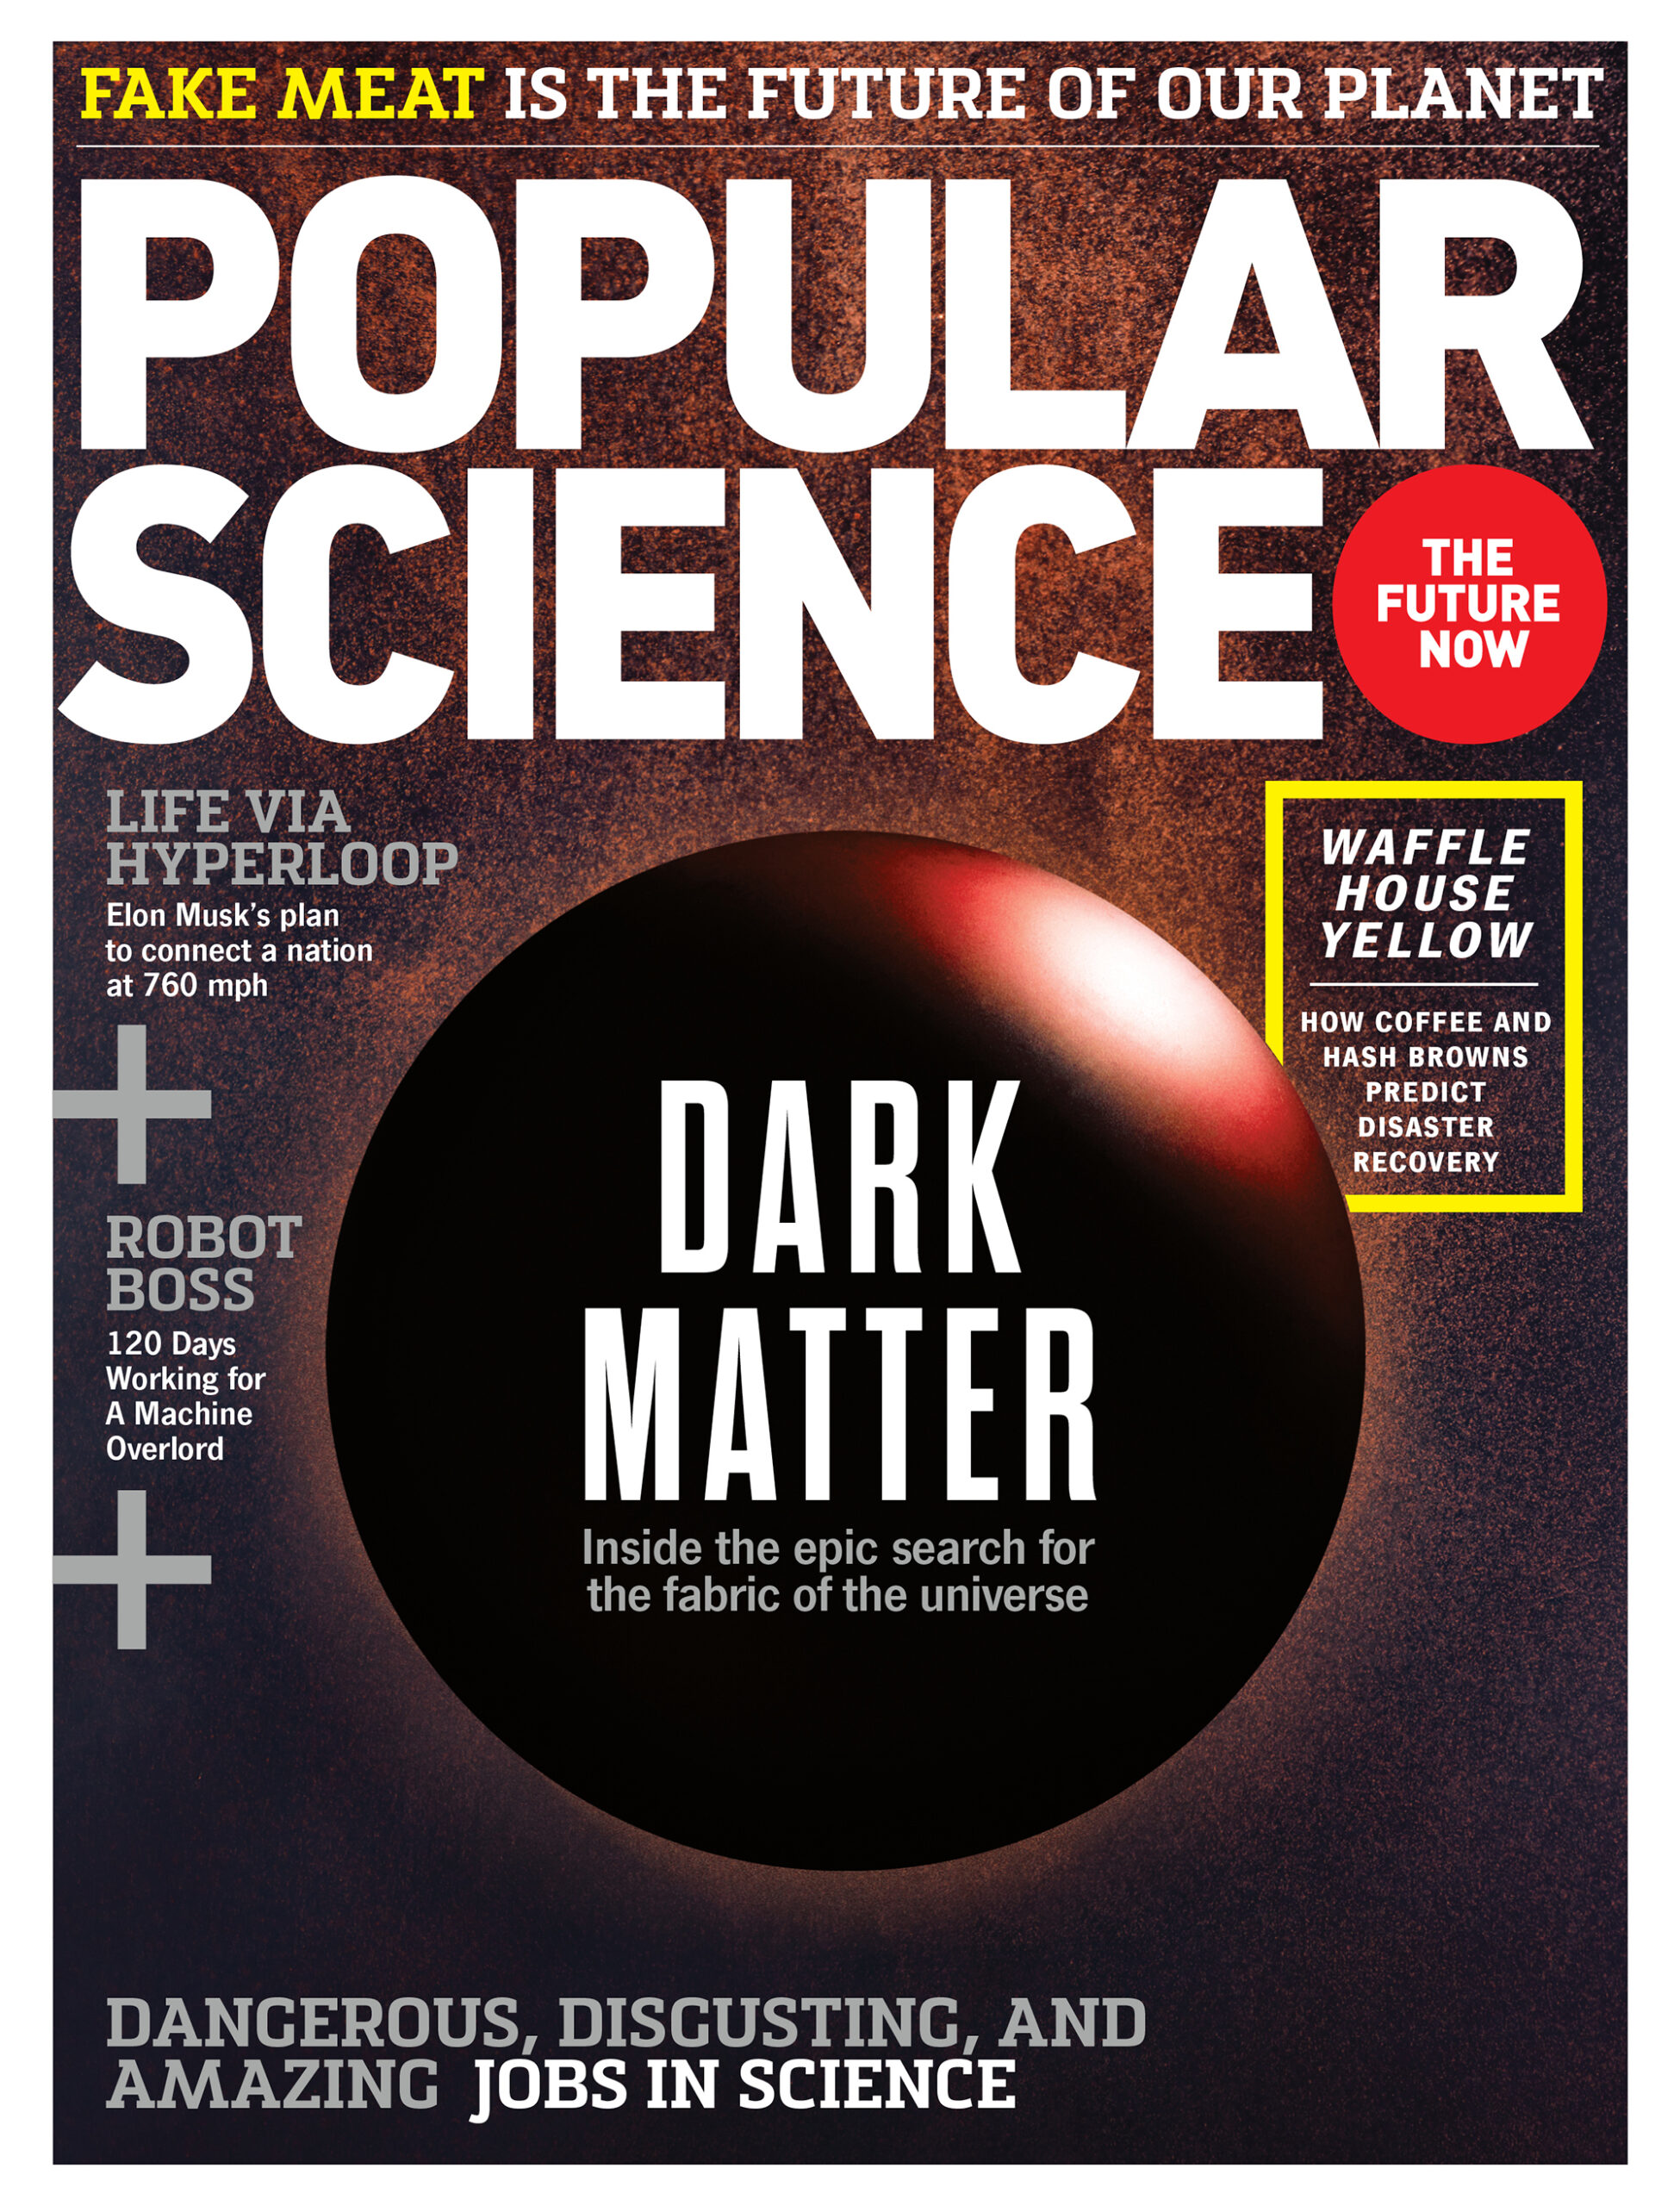 November 2013: The Hunt For Dark Matter